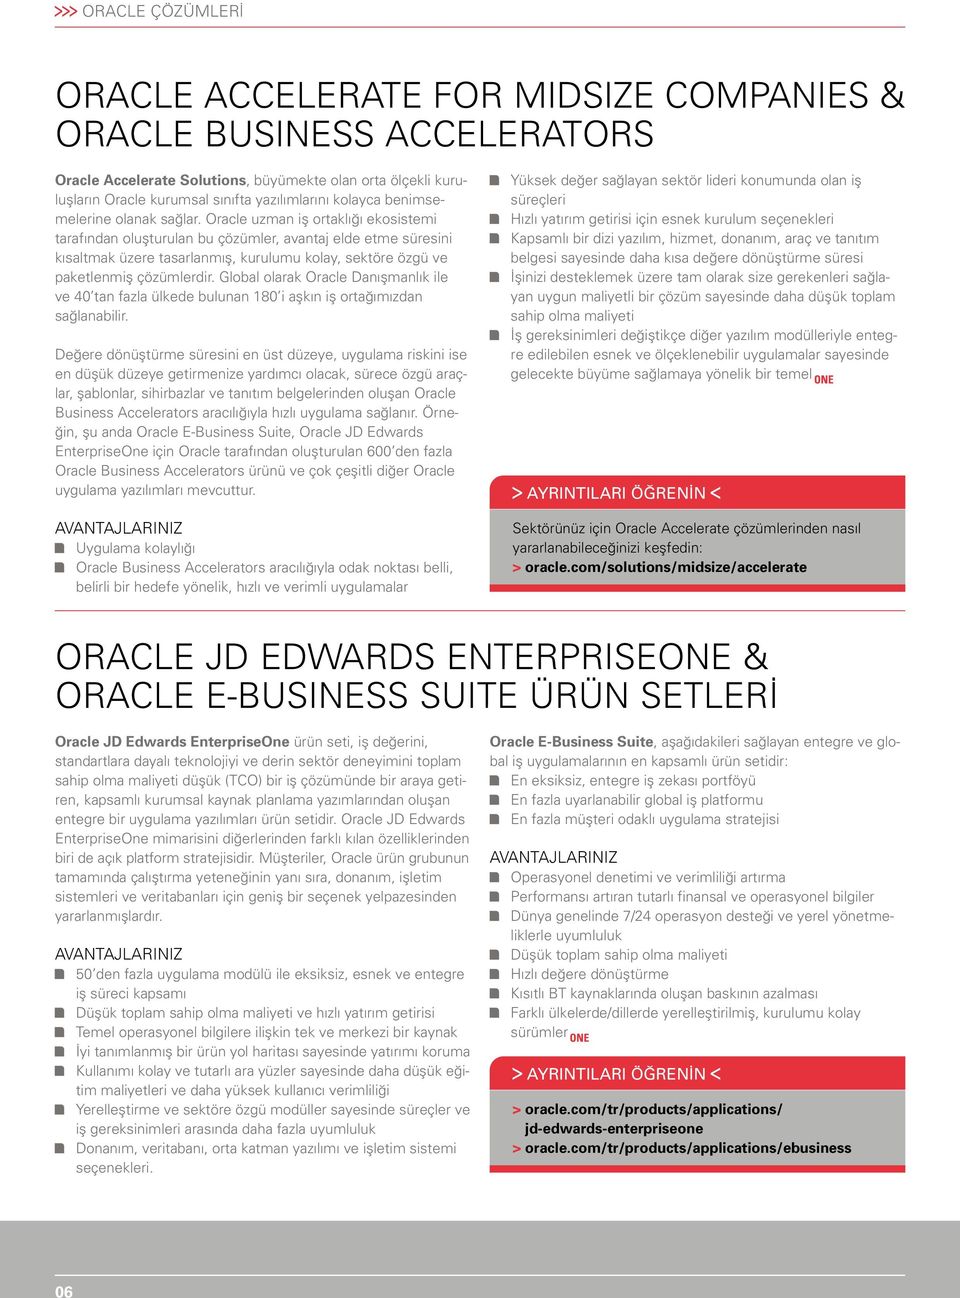 Oracle uzman iş ortaklığı ekosistemi tarafından oluşturulan bu çözümler, avantaj elde etme süresini kısaltmak üzere tasarlanmış, kurulumu kolay, sektöre özgü ve paketlenmiş çözümlerdir.